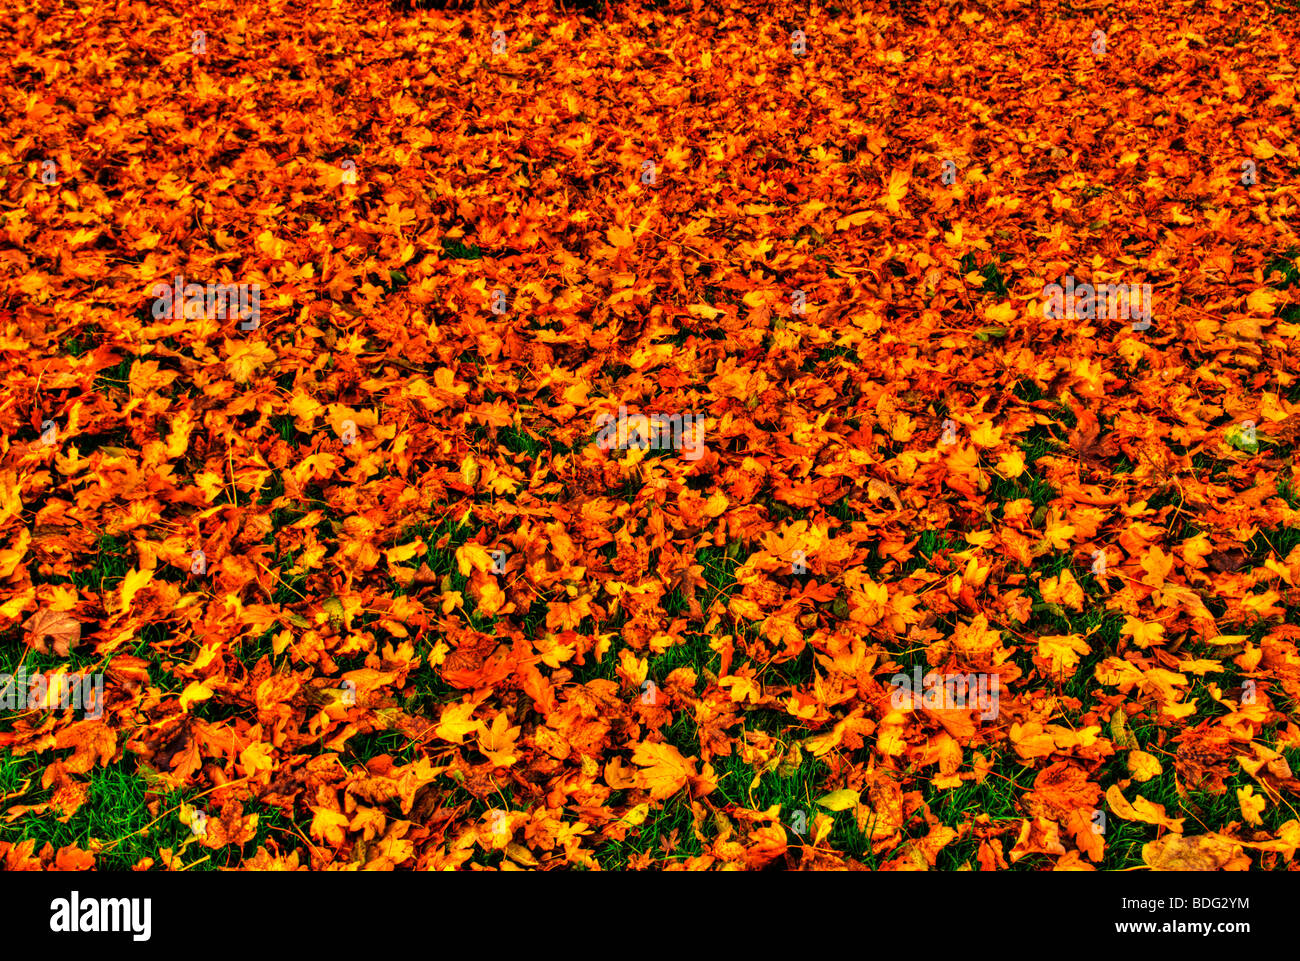 HDR - lässt High Dynamic Range Bild des Herbstes auf Boden, England, UK Stockfoto